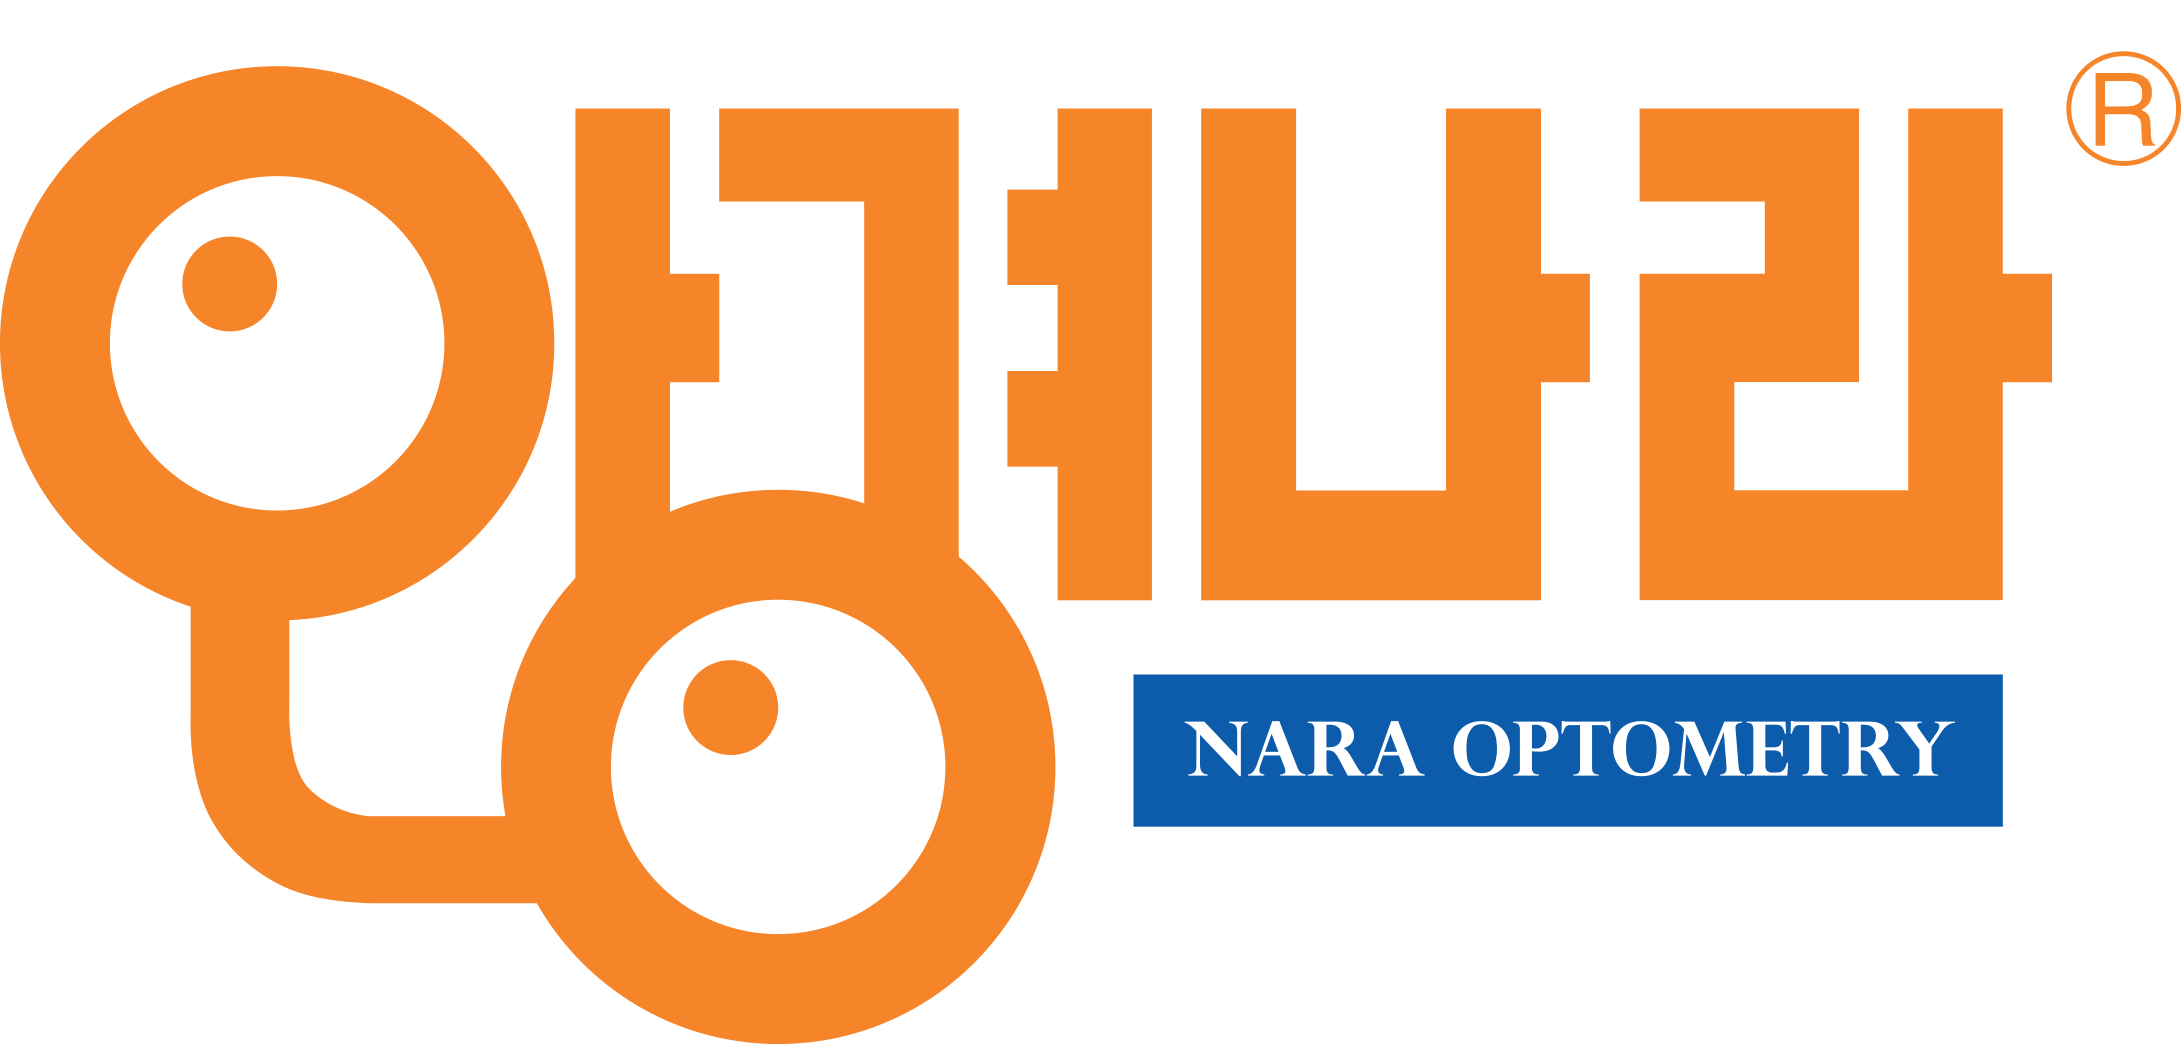 Nara-Optometry-logo.png